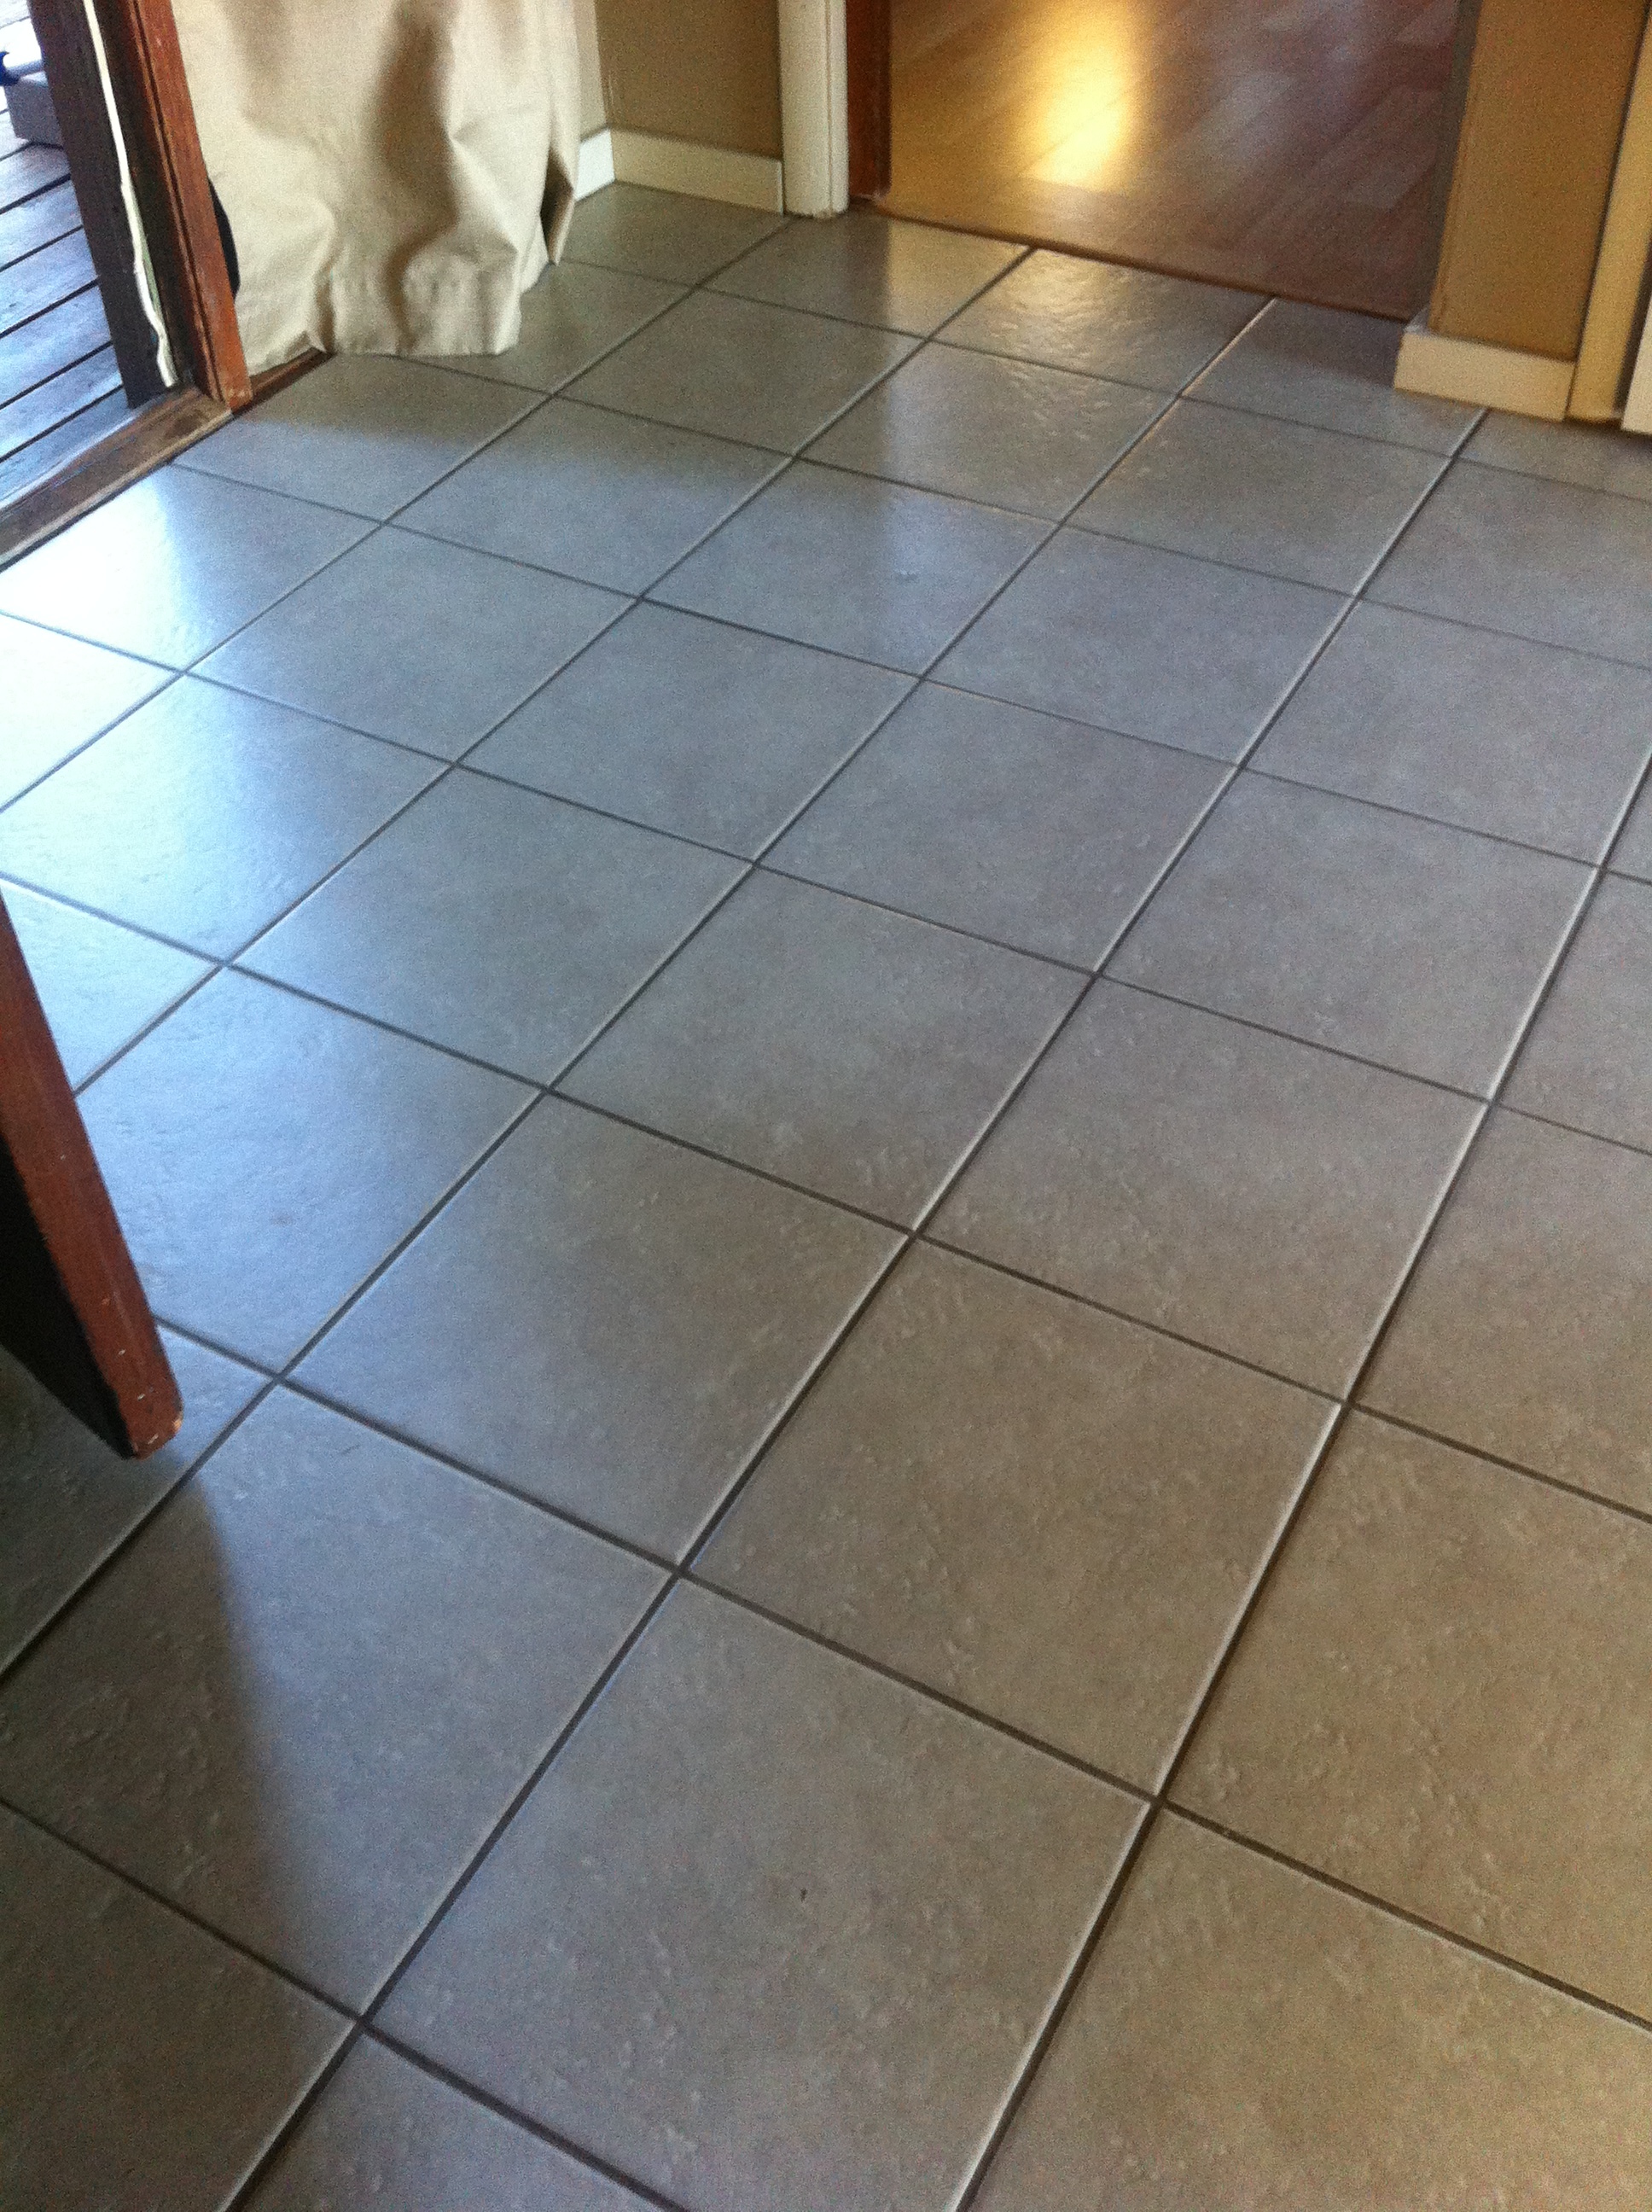  We just love clean floors! 